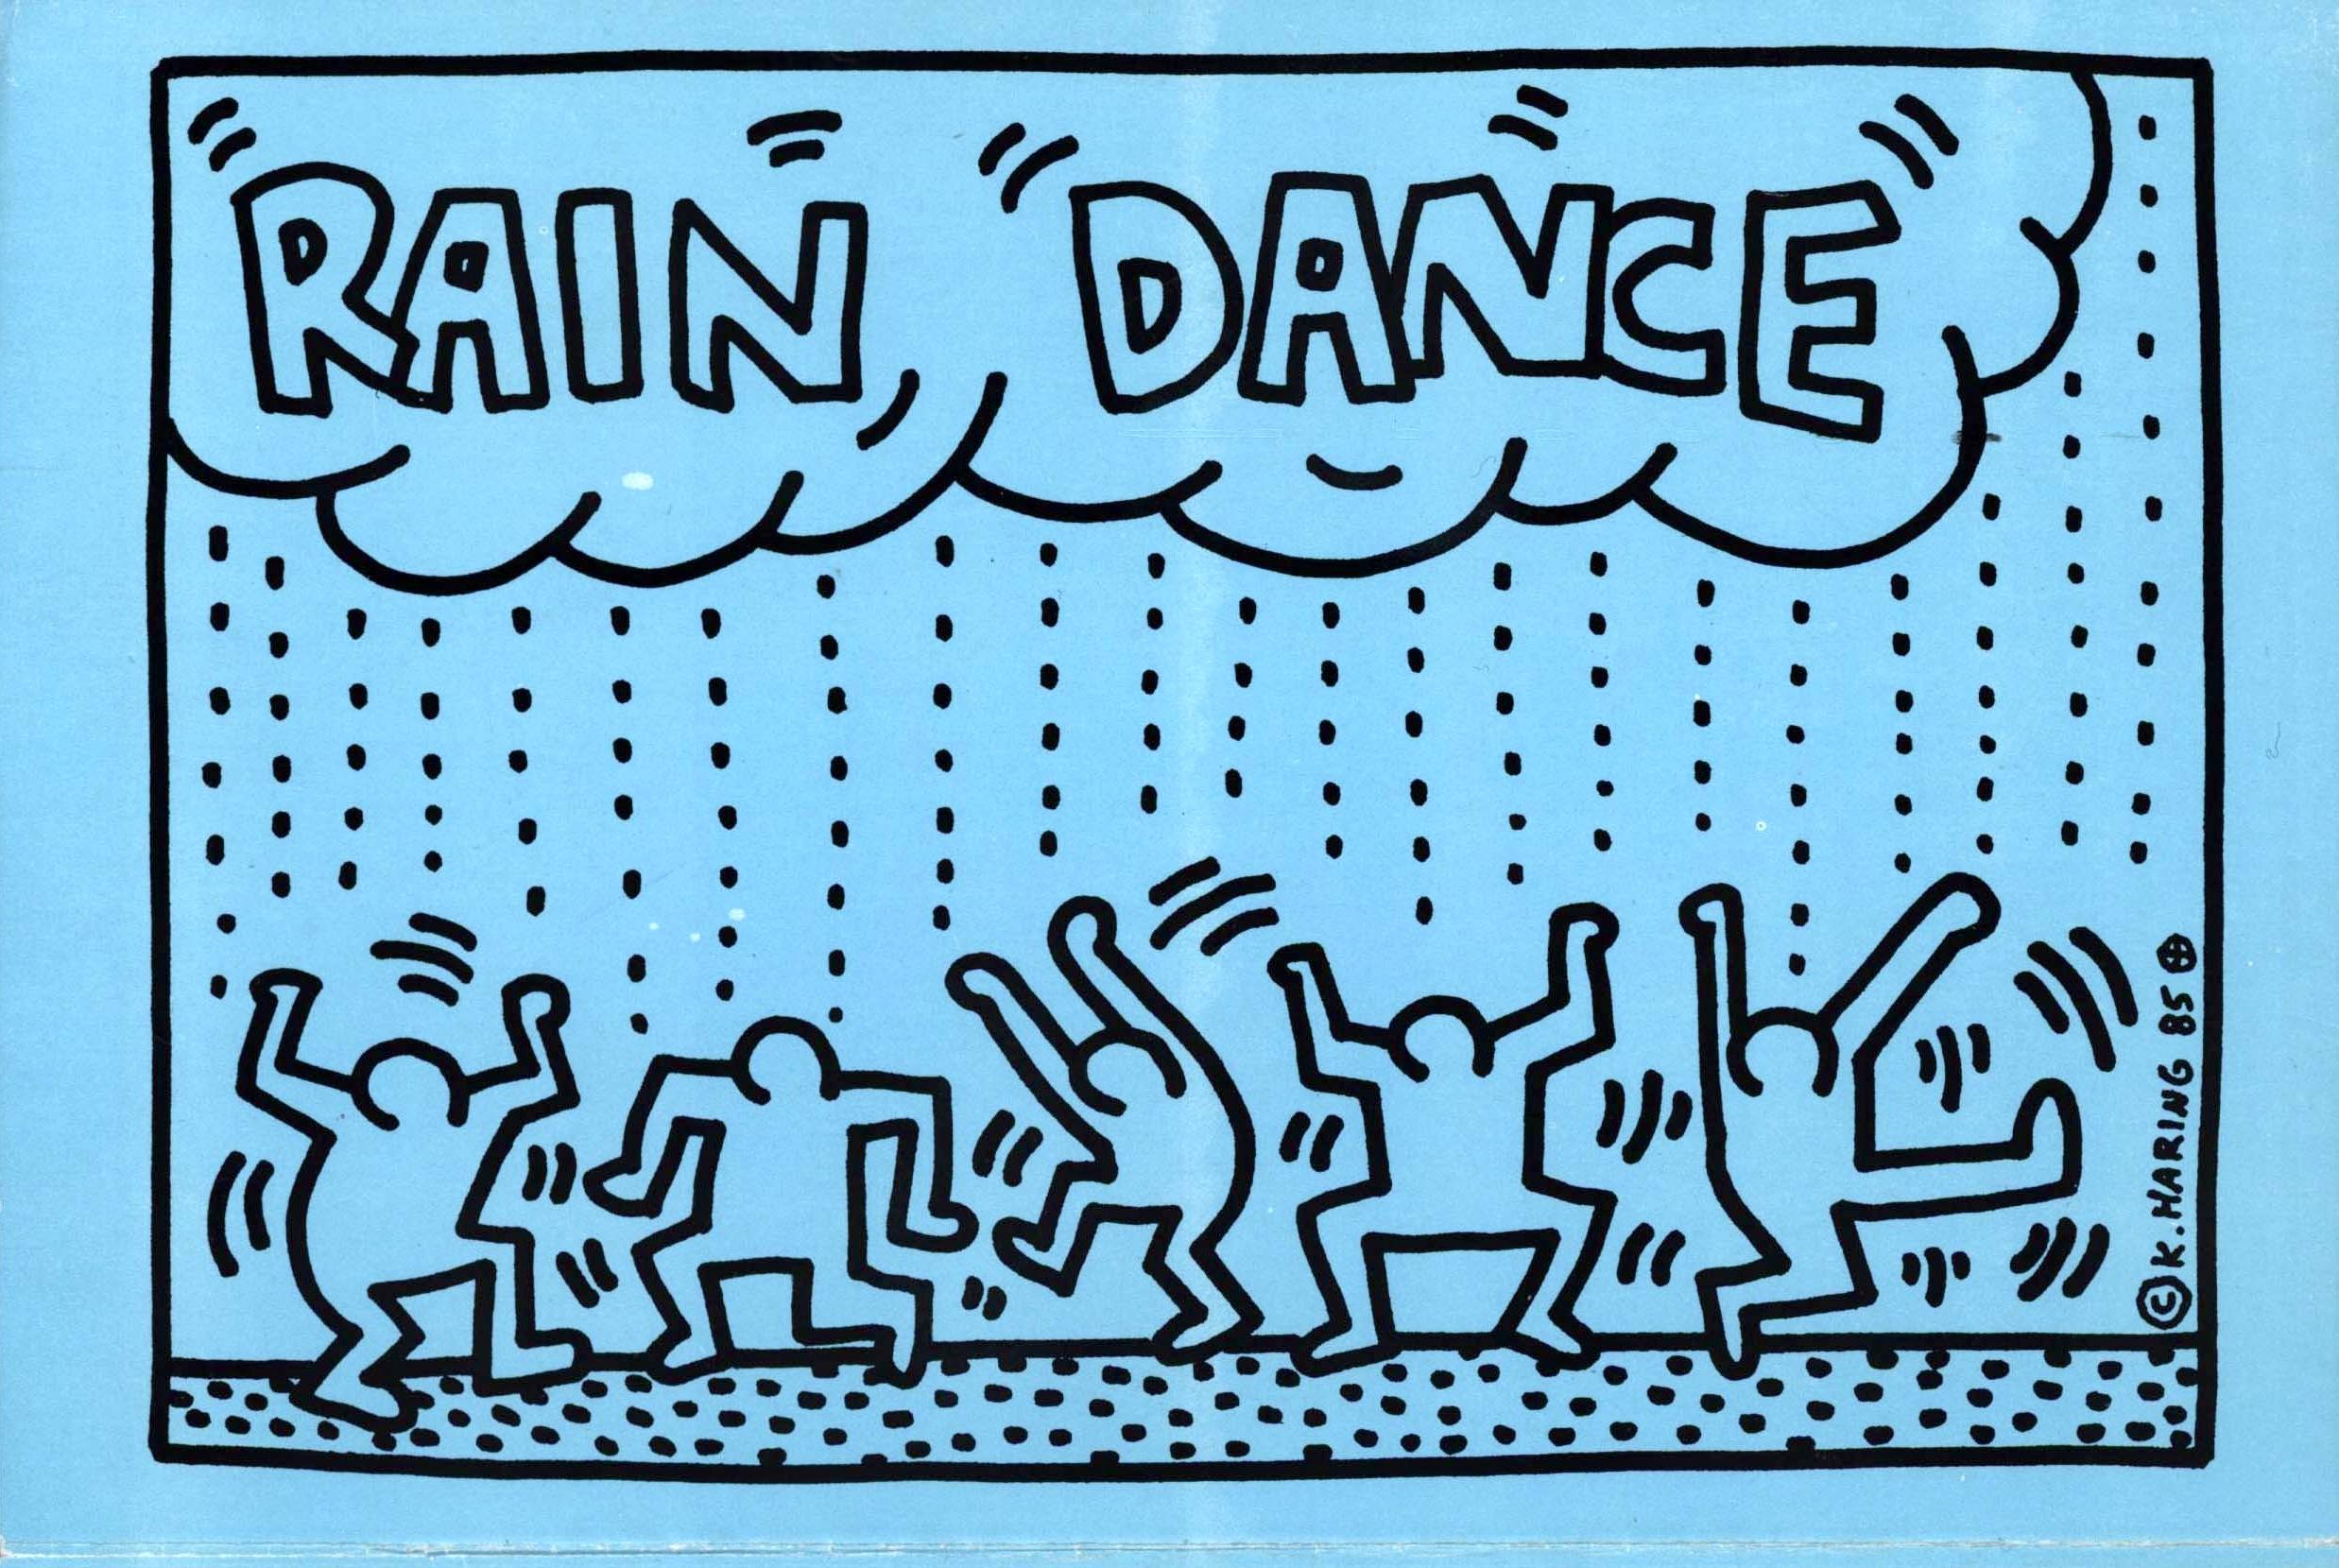 Keith Haring Rain Dance 1985 :
RARE affiche illustrée originale de Keith Haring des années 1980 annonçant une soirée légendaire de Keith Haring au profit de l'UNICEF au Paradise Garage de Larry Levan en 1985. Un événement organisé par Keith Haring,